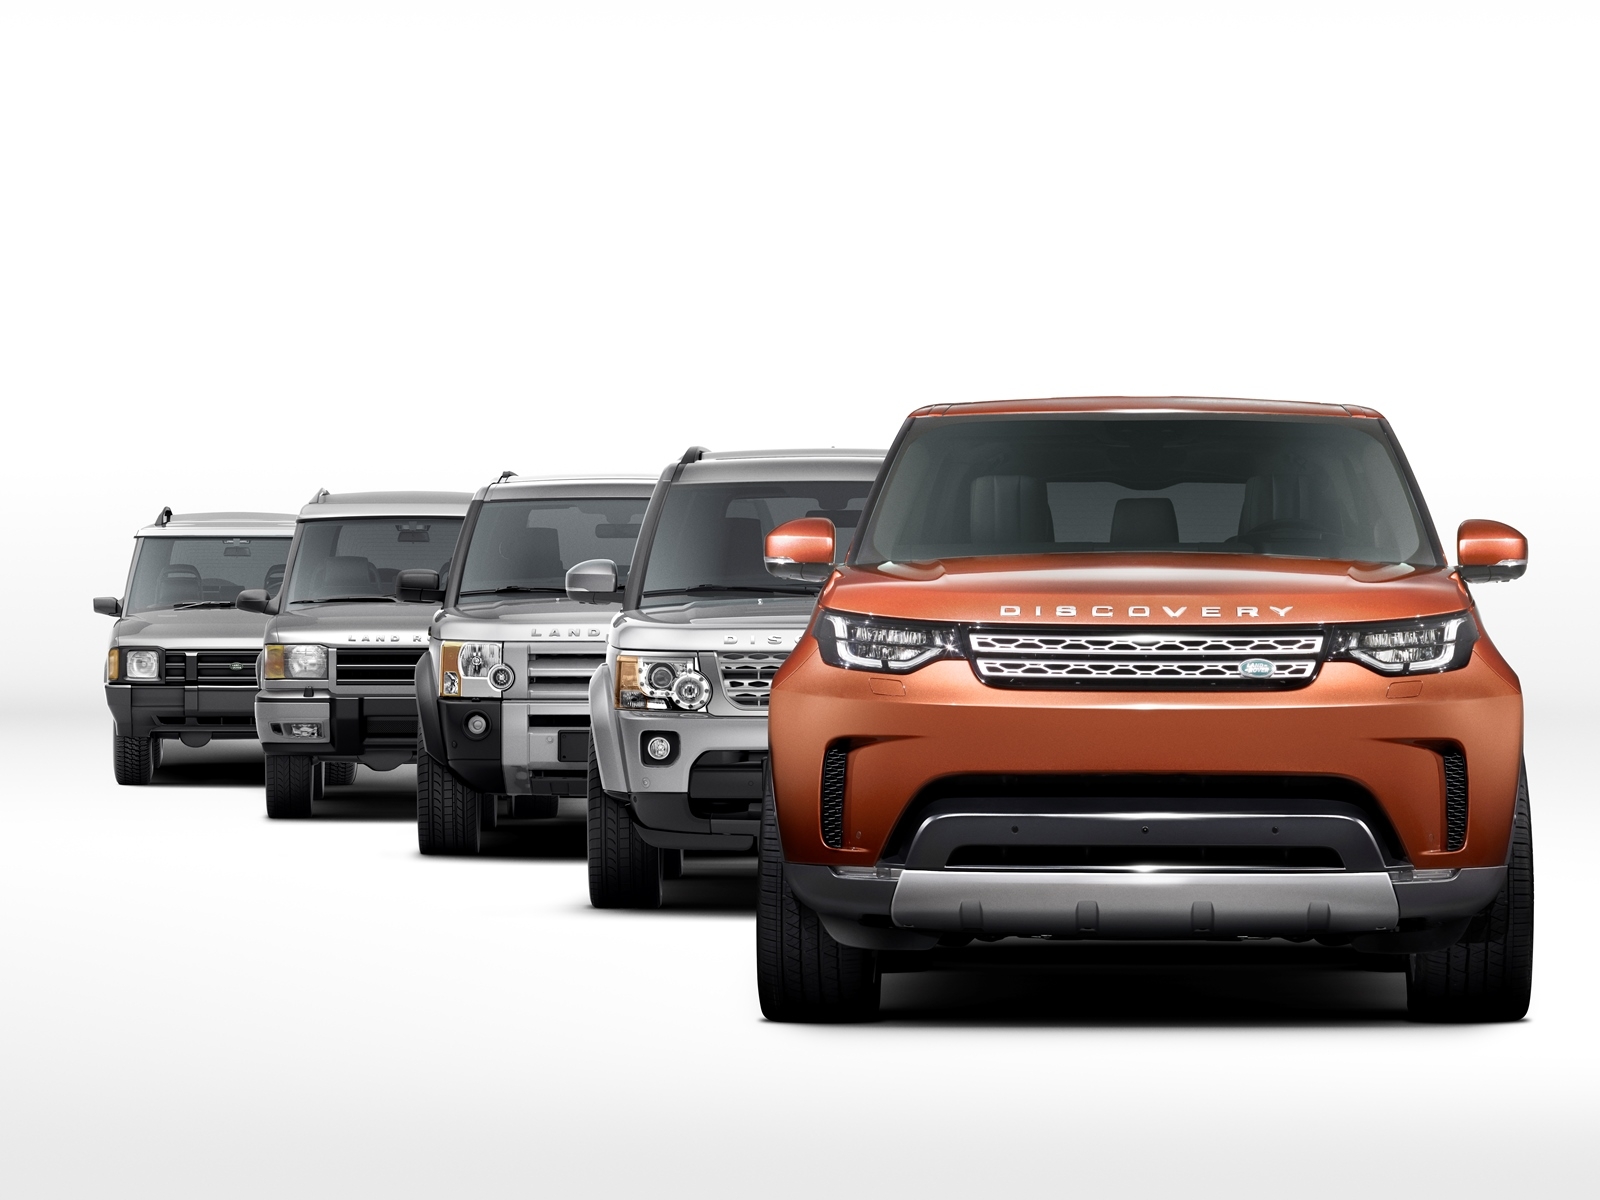 Nuova Land Rover Discovery: in anteprima il 28 settembre a Parigi